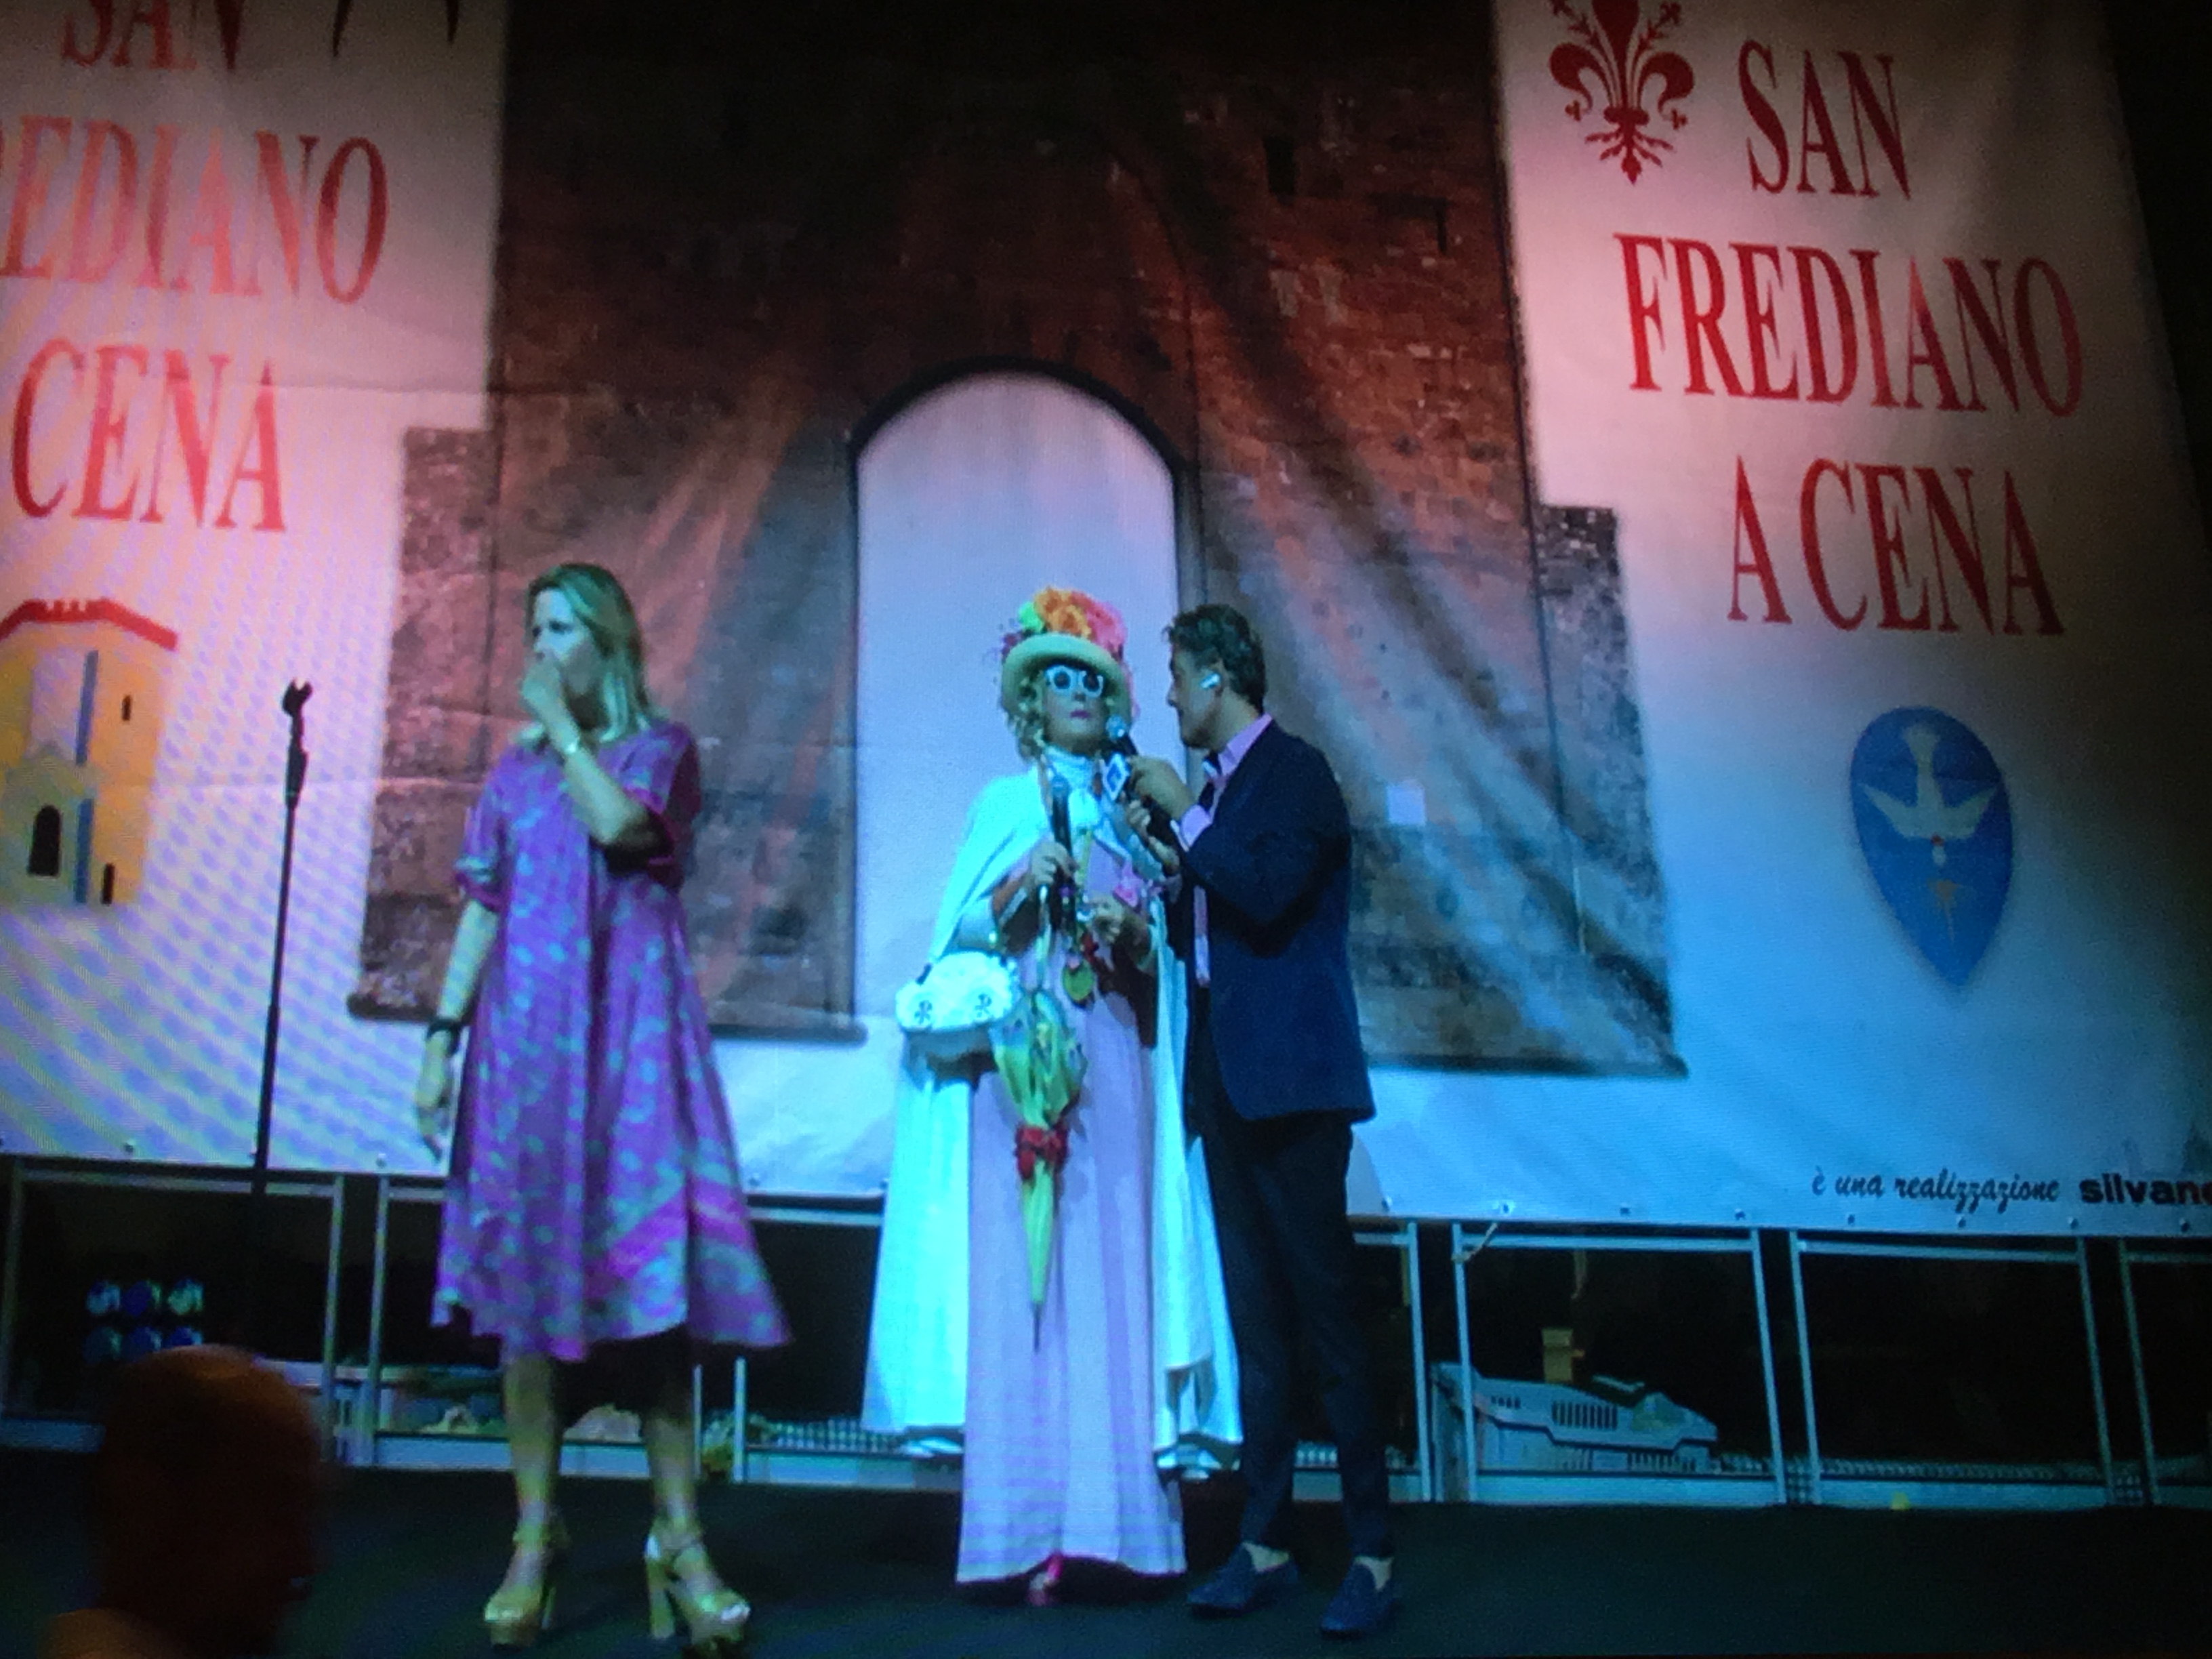 San Frediano a cena Torrino d’oro 2019 – Foto Giornalista Franco Mariani (26)